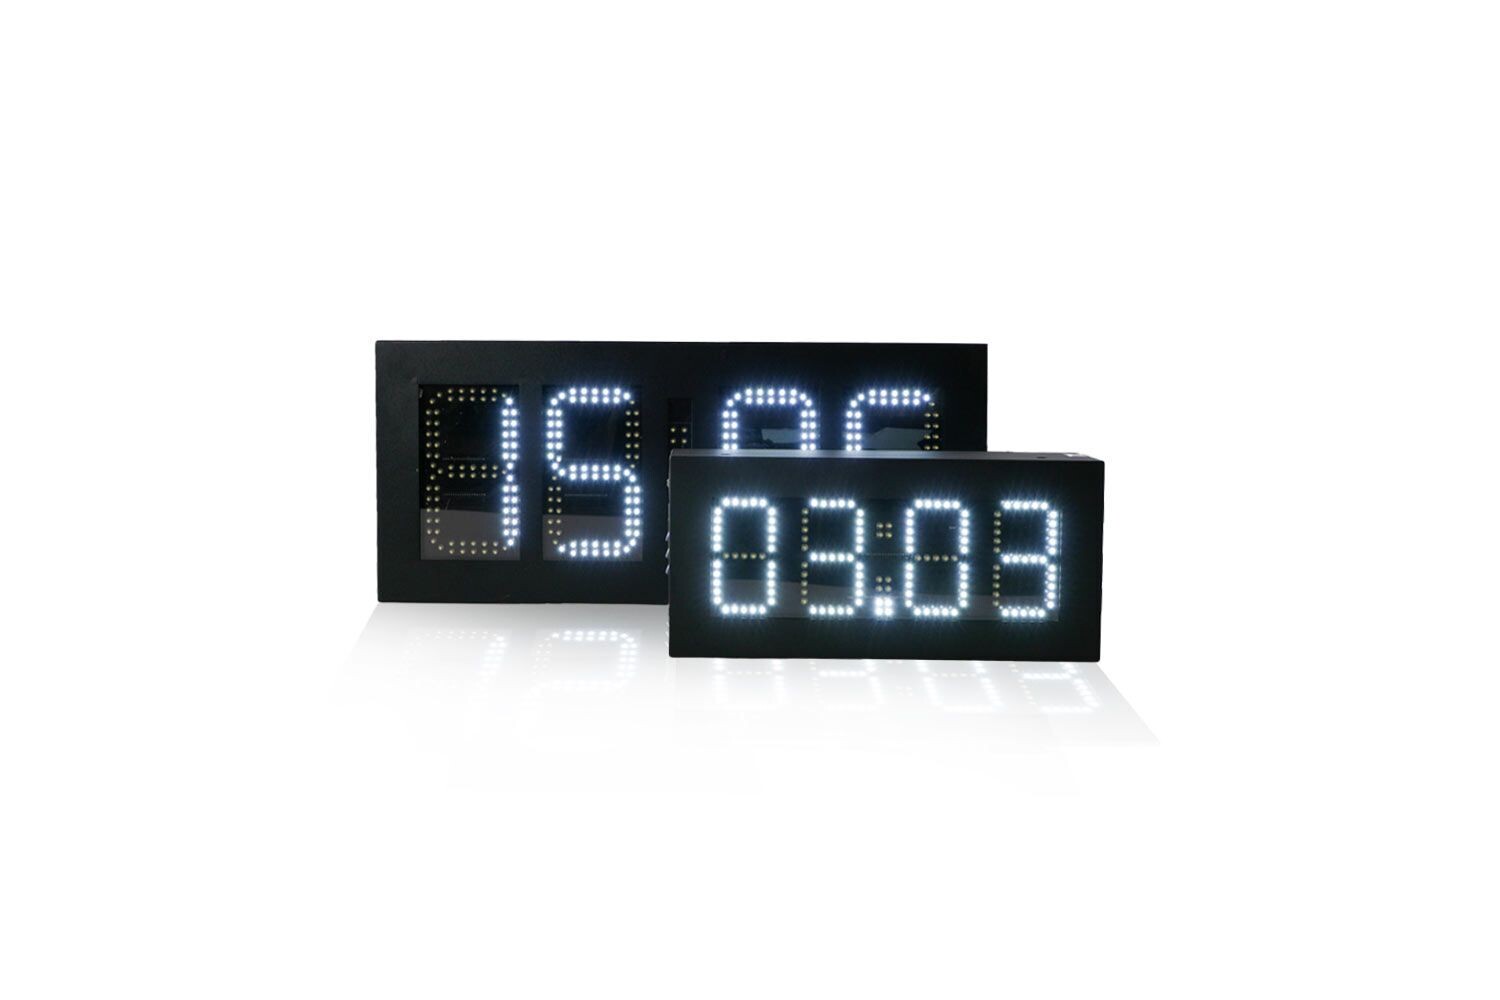 4 LED-Digital-Uhr mit Datum- u. Temperaturanzeige, einseitig